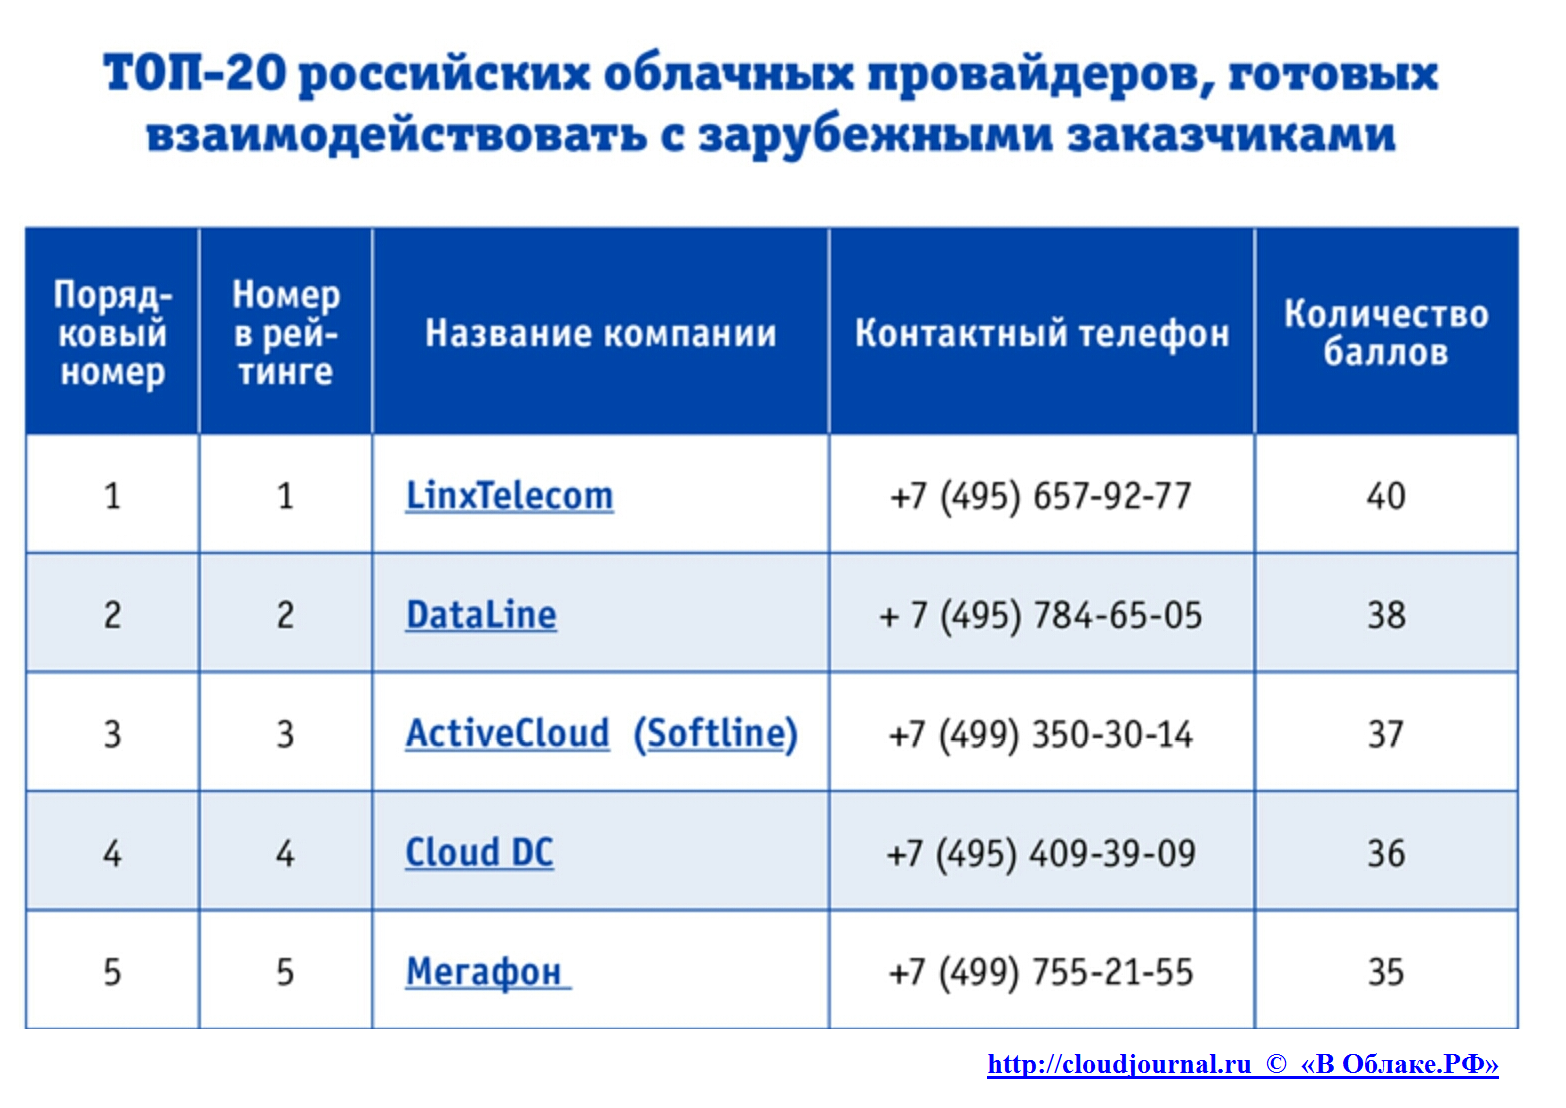 Рейтинг облачных-провайдеров России по степени готовности к взаимодействию с иностранными клиентами - 2